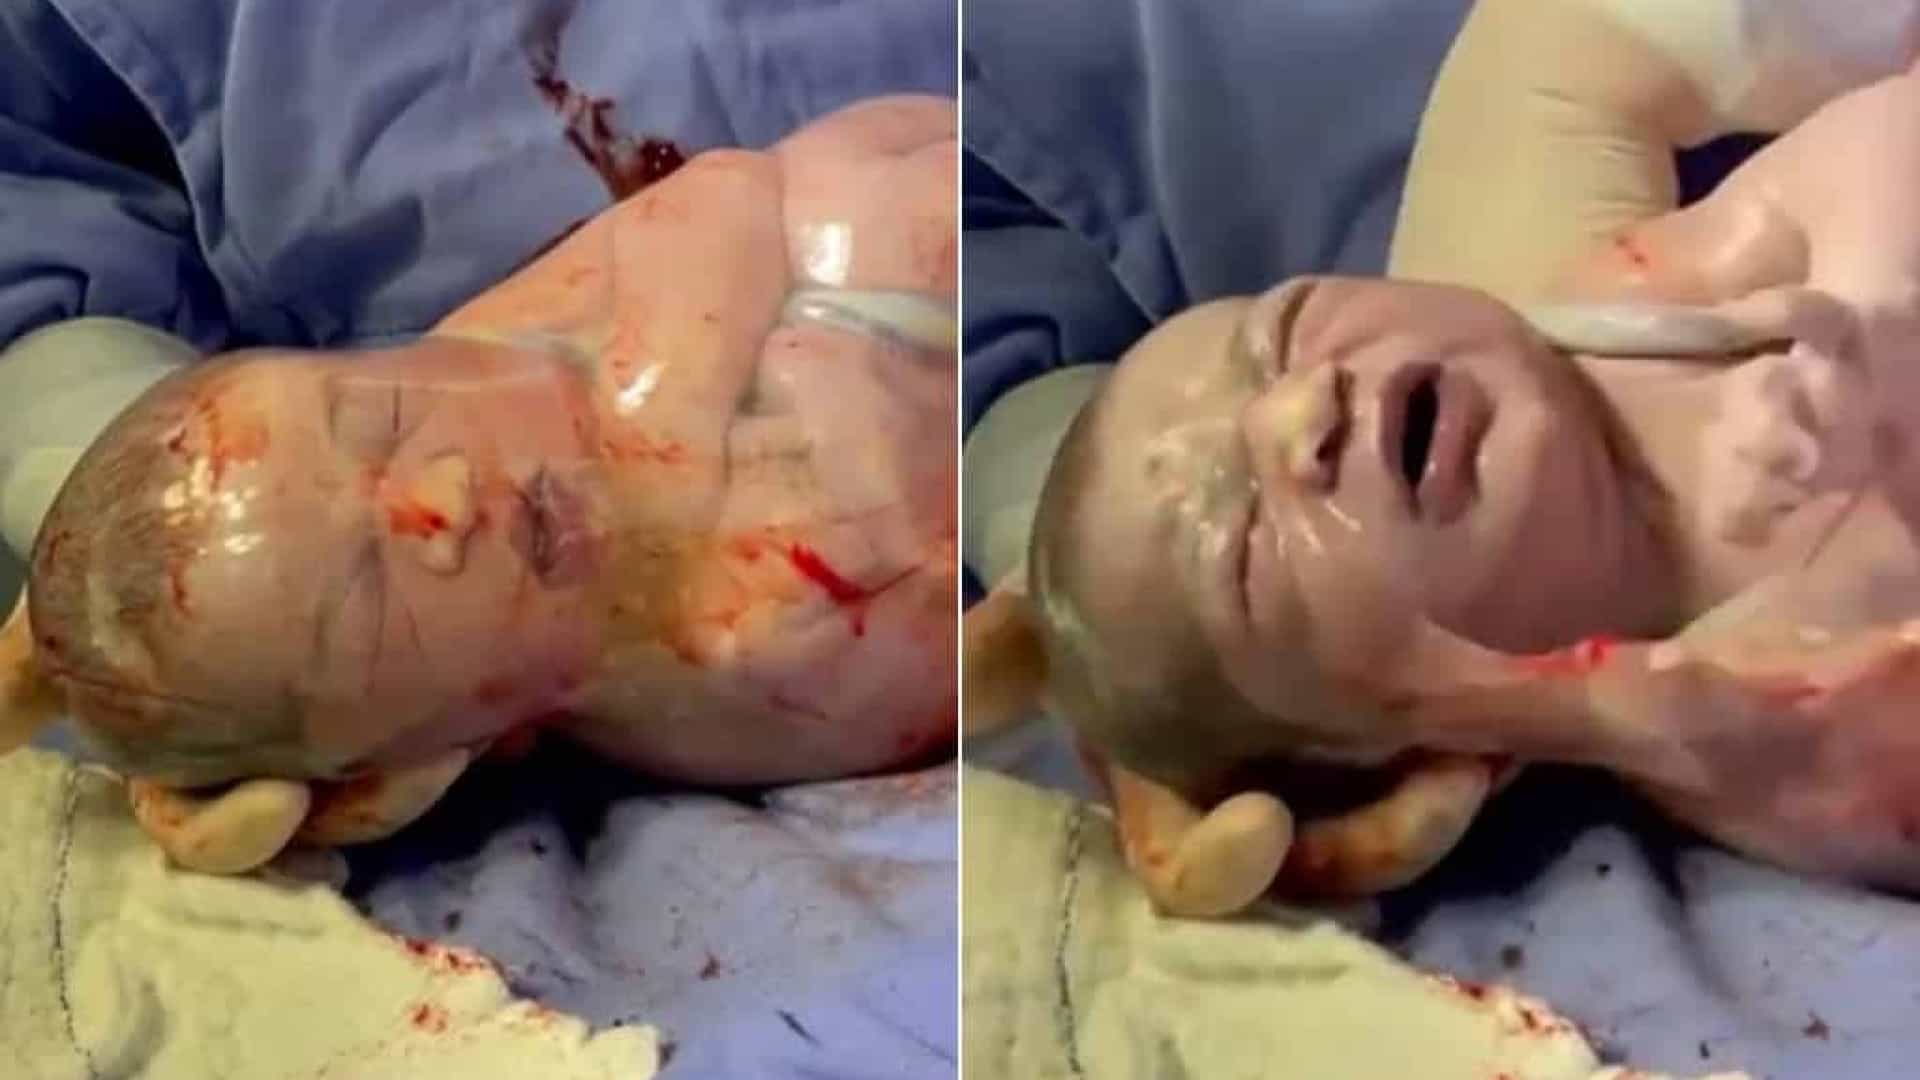 VEJA VÍDEO: Bebê nasce empelicado e vídeo e médico rompendo bolsa viraliza